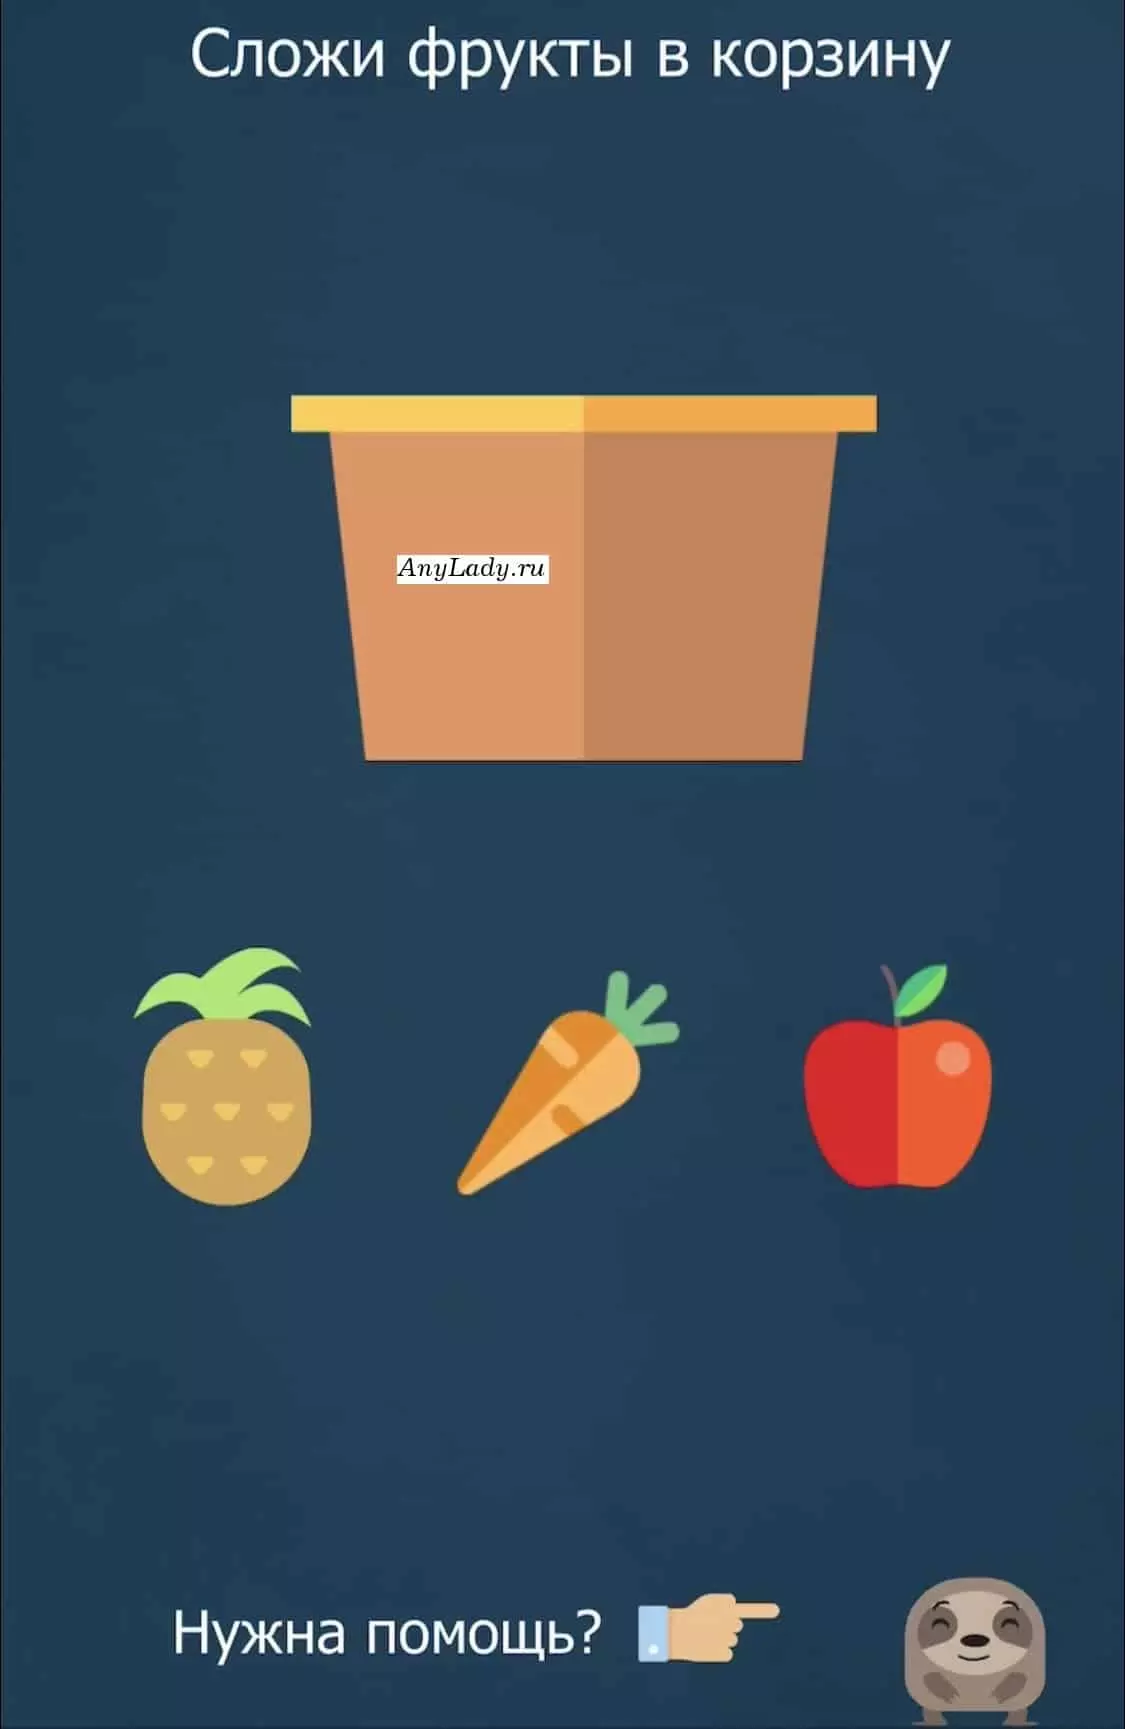 В контейнер бросьте фрукты: ананас и красное яблочко.  
 Морковку не трогайте, она принадлежит к разряду овощей.  